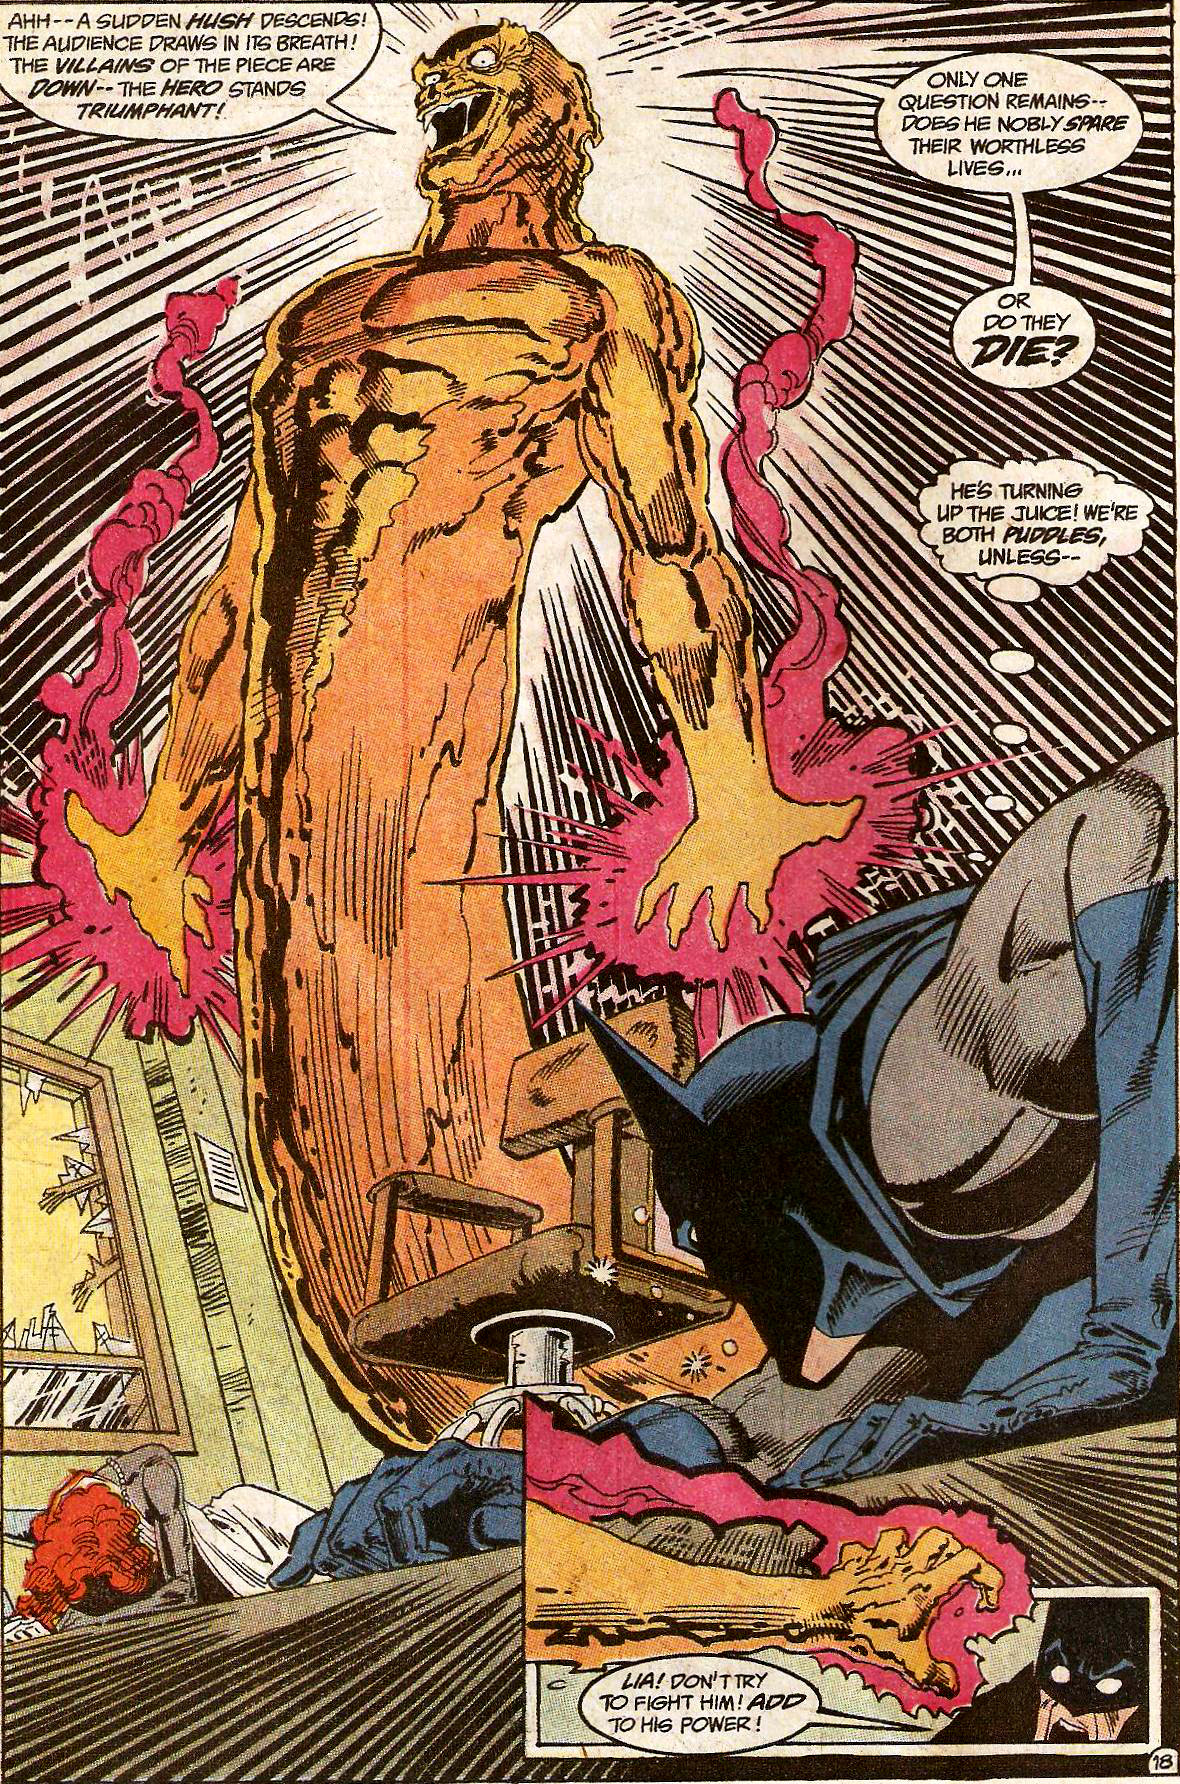 From Detective Comics (Vol. 1) #607 (1989)